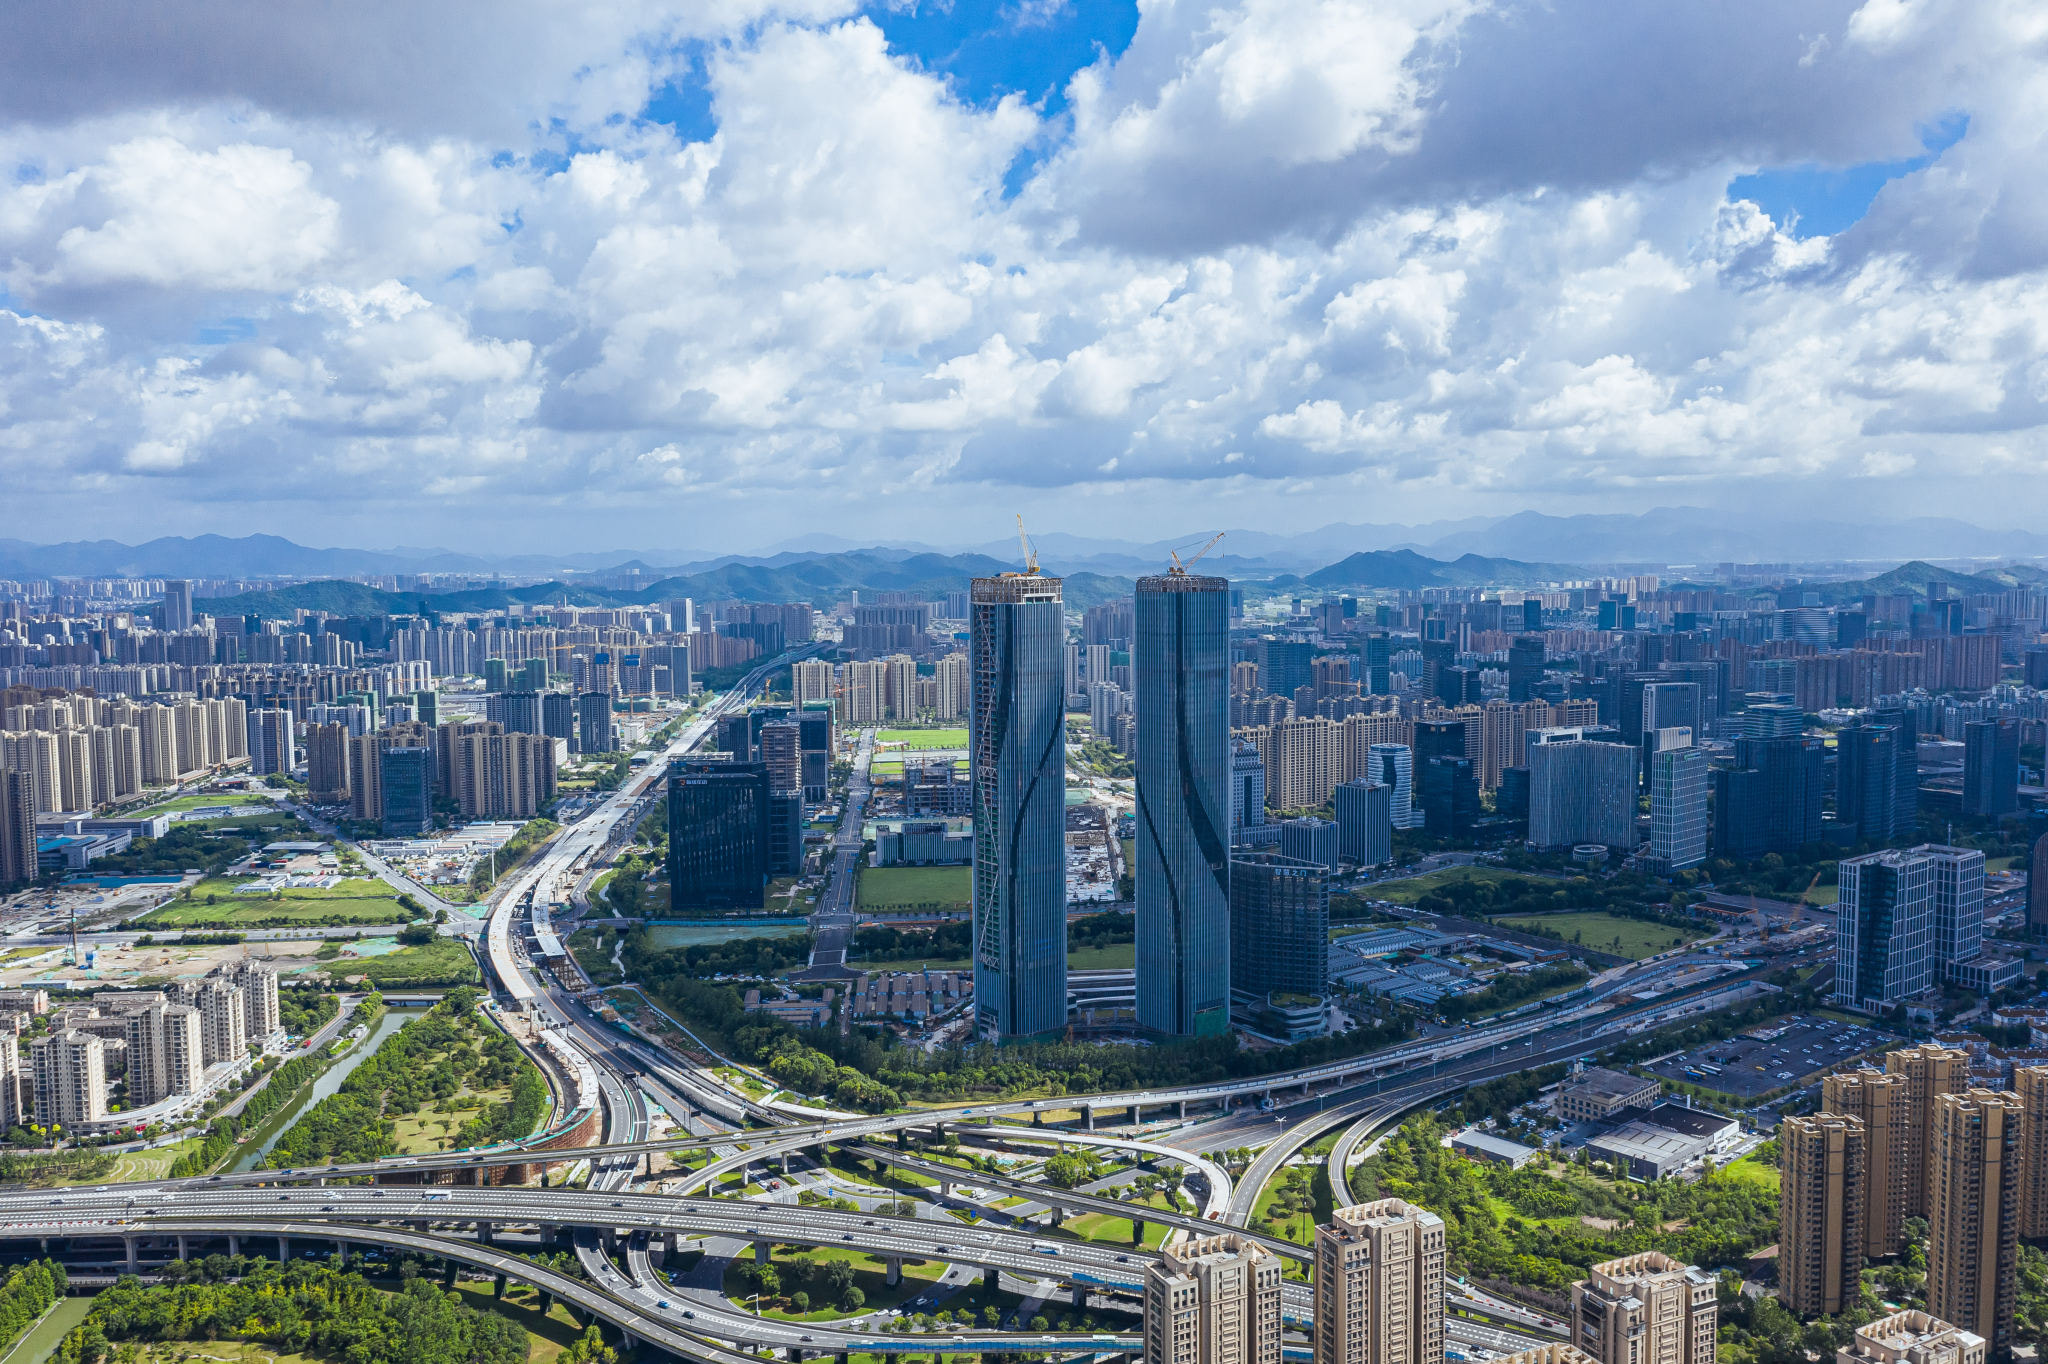 HANGZHOU | Shimao Hangzhou Wisdom Towers | 272m x 2 | 893ft x 2 